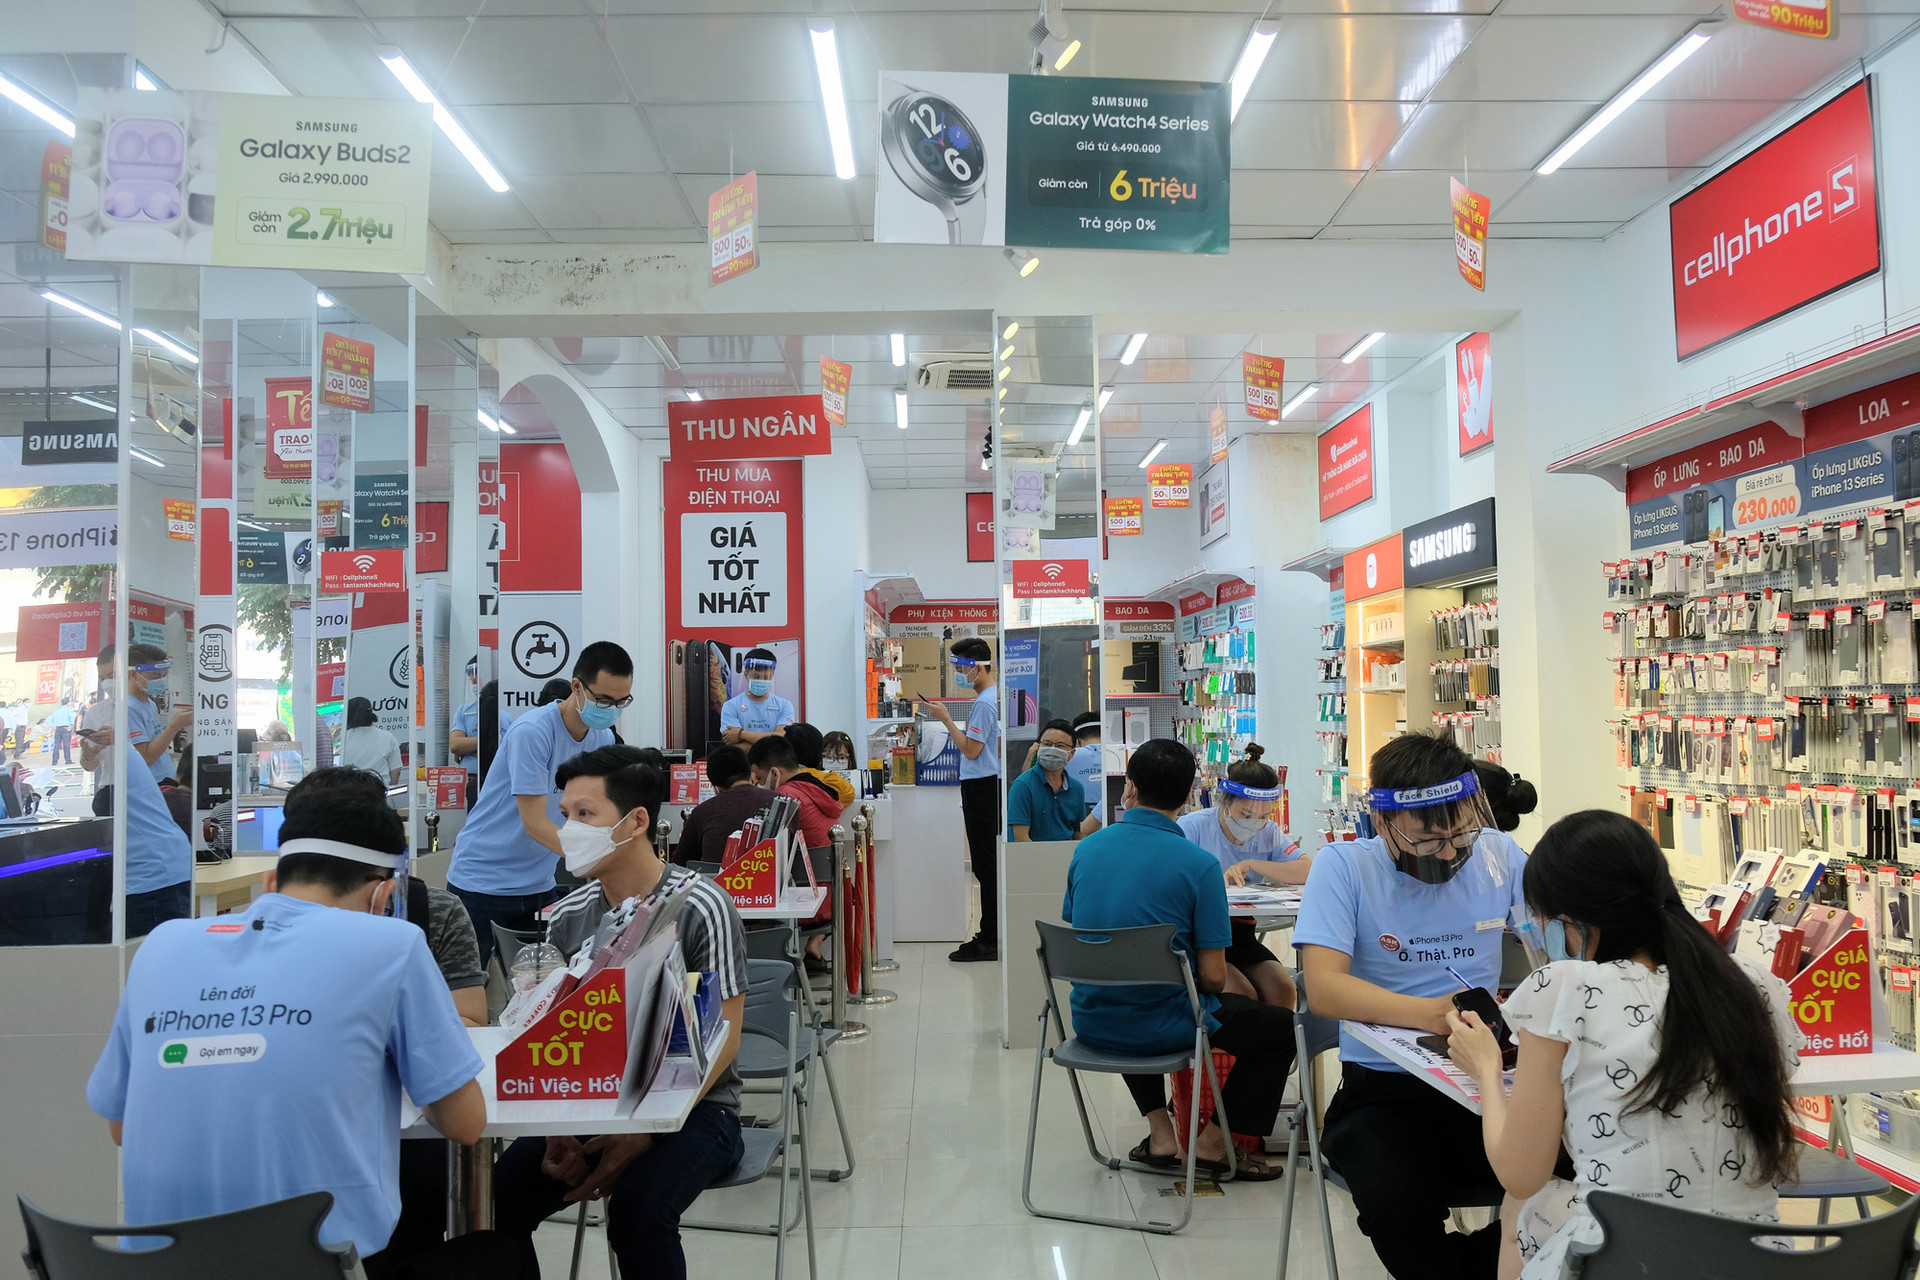 CellphoneS mở bán iPhone 13 chính hãng tại thị trường Việt Nam - Ảnh 2.